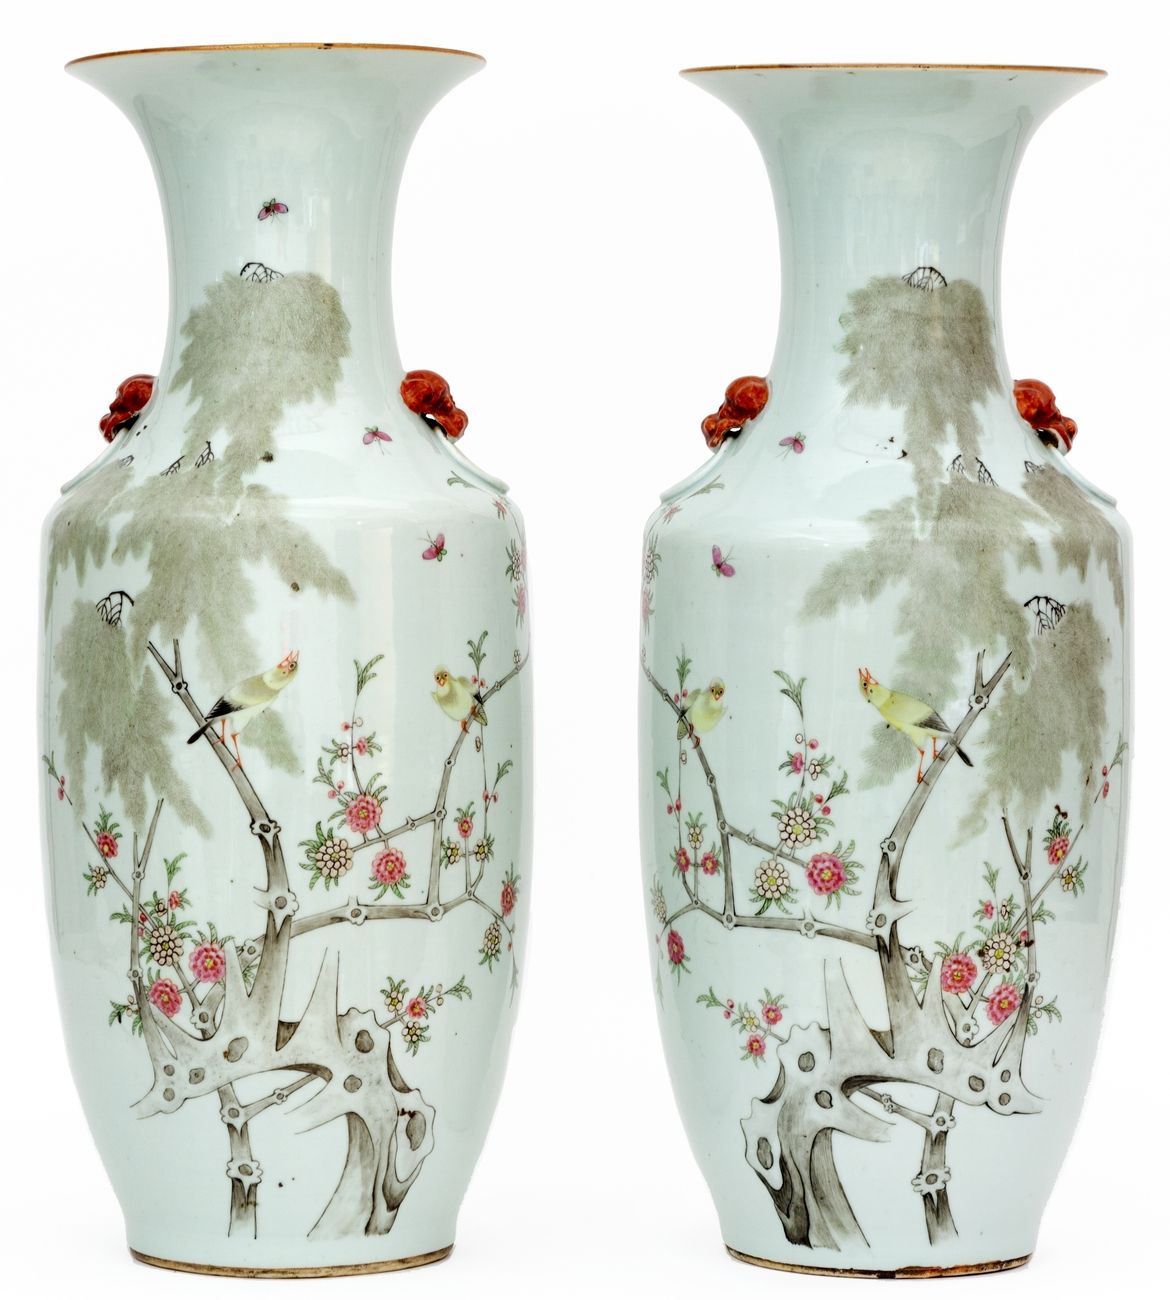 Null 中国，19-20世纪
一对瓷器花瓶，多色珐琅装饰的鸟儿在枝头。
底座上有四个字的标记。
高度：57.5厘米